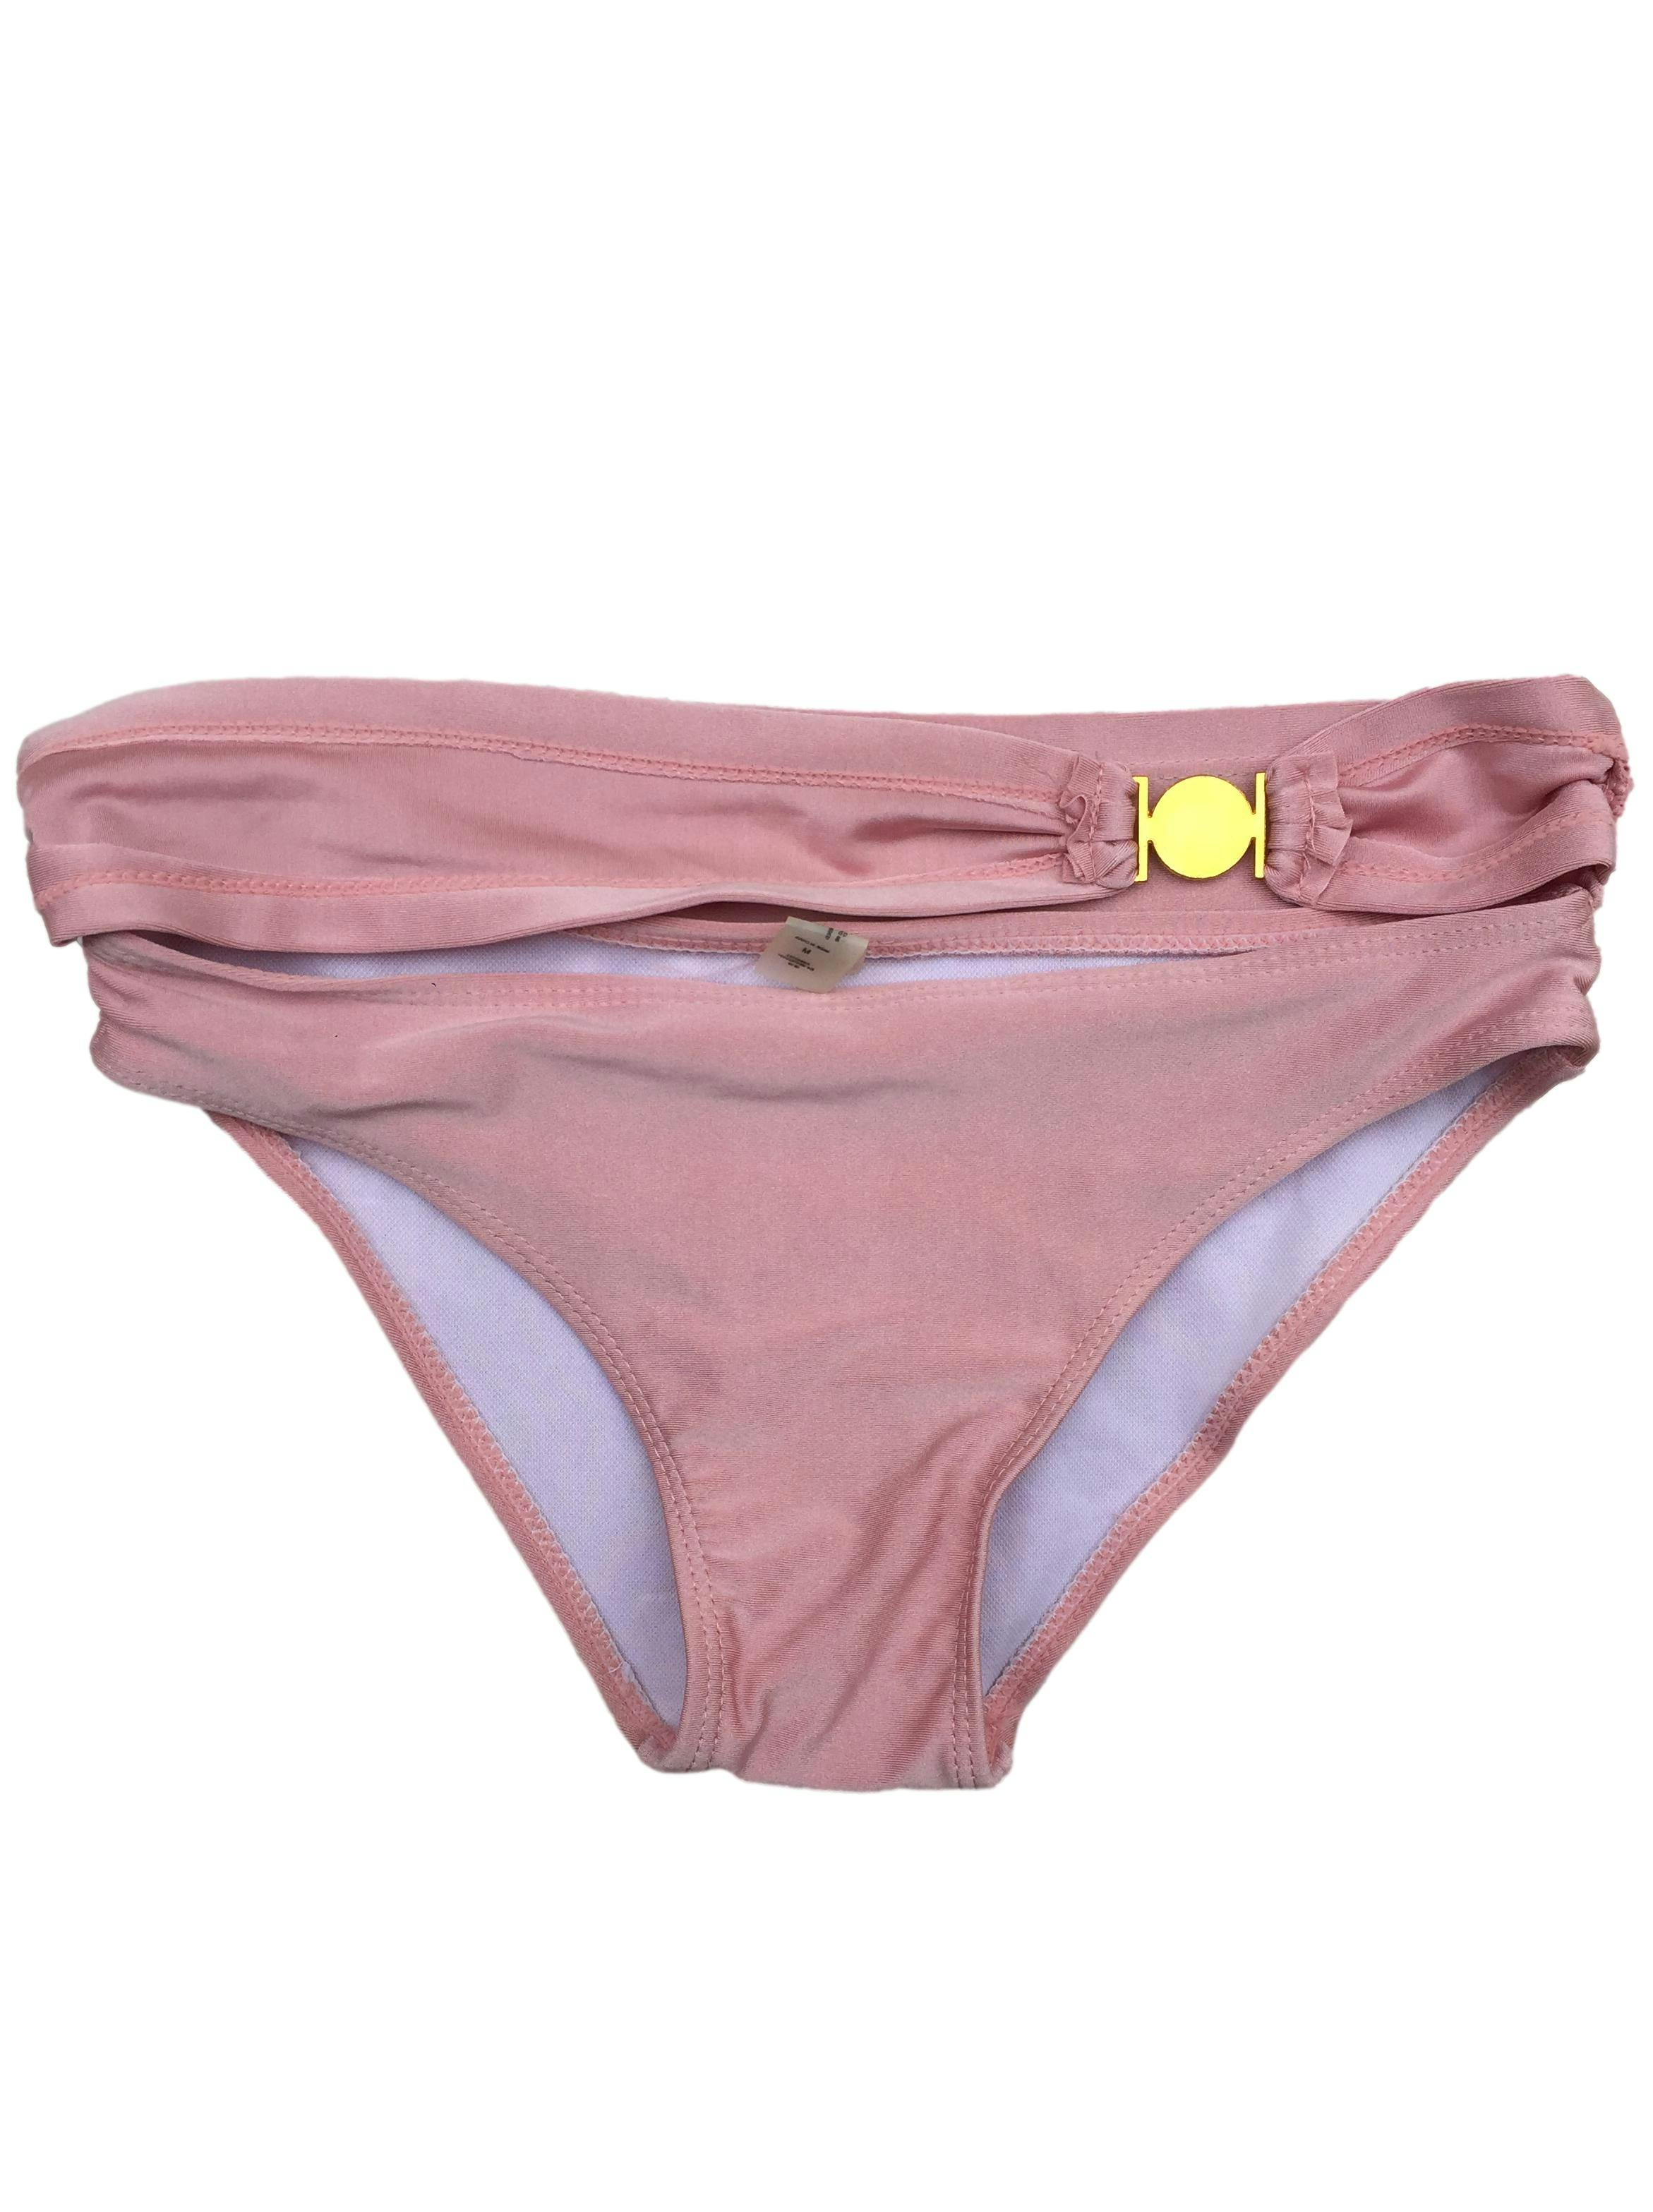 Truza ropa de baño rosa perlado. Cintura: 66cm. Nuevo